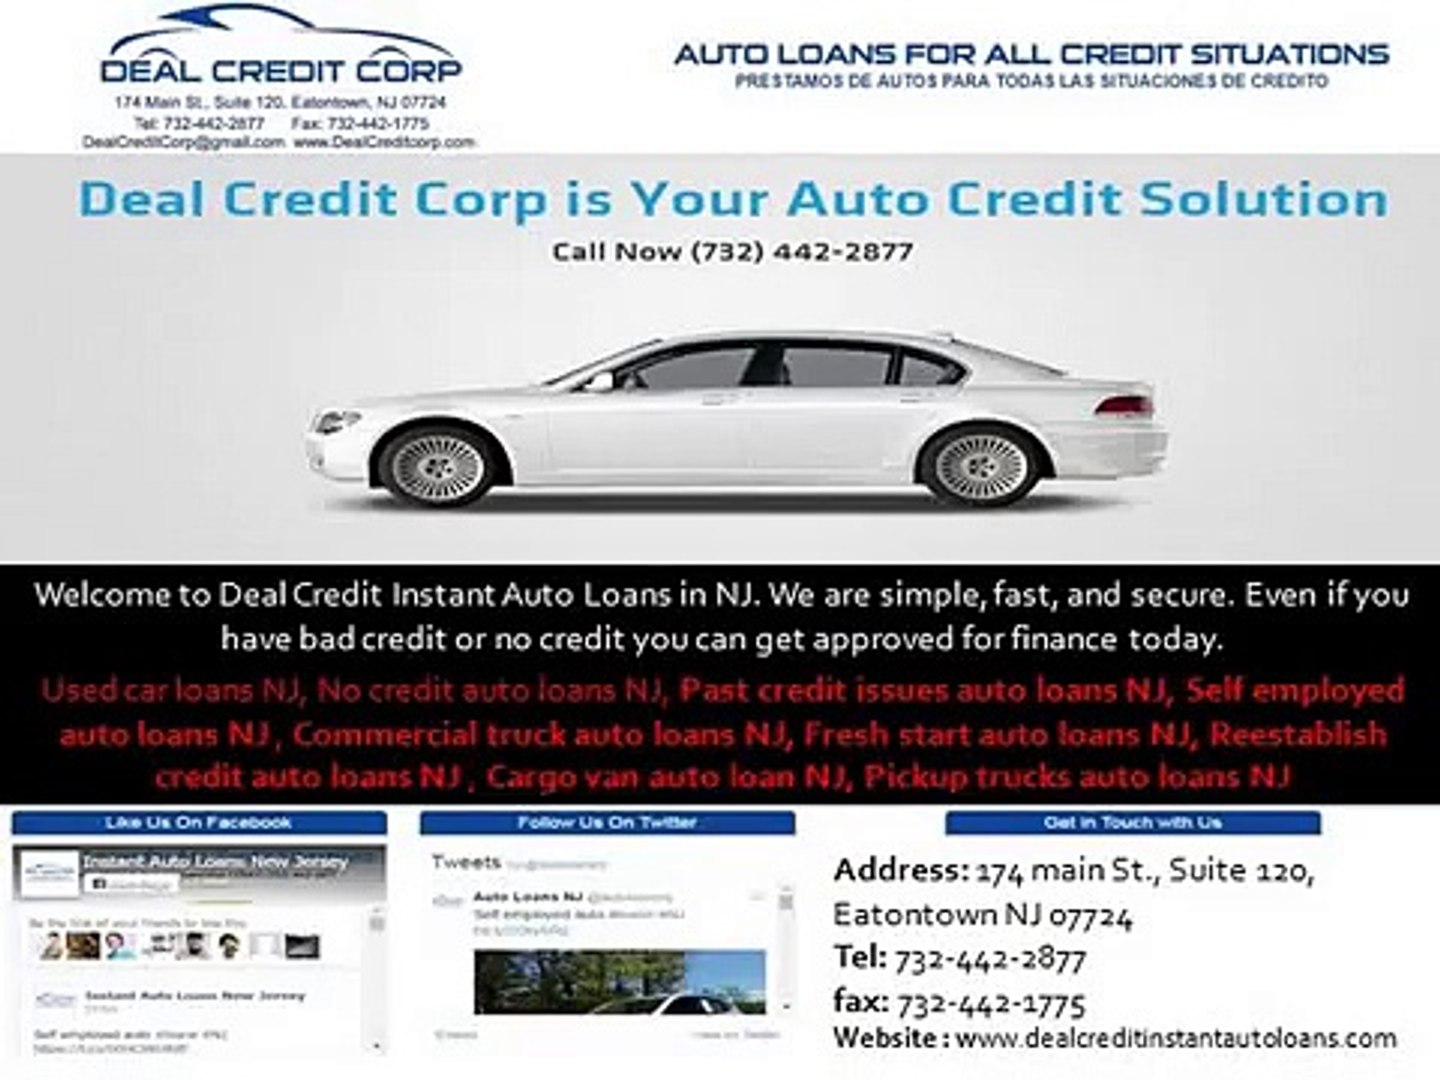 No credit auto loans NJ